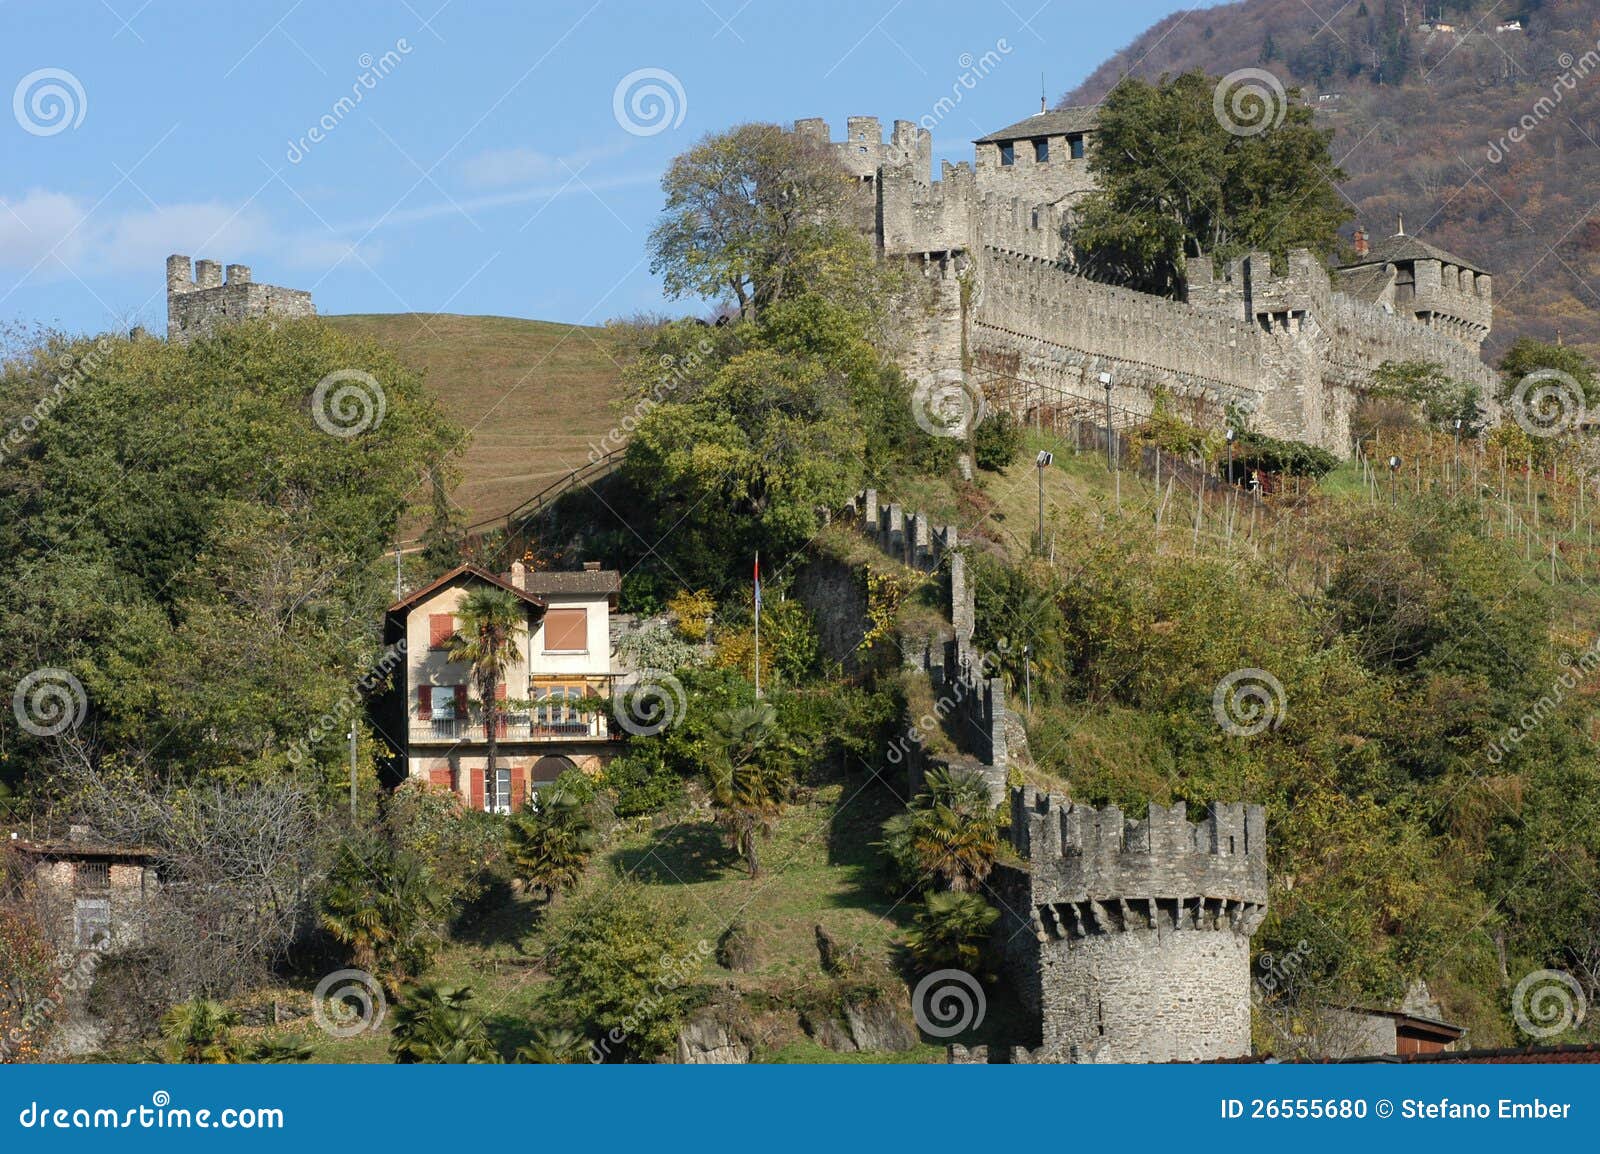 castle montebello at bellinzona